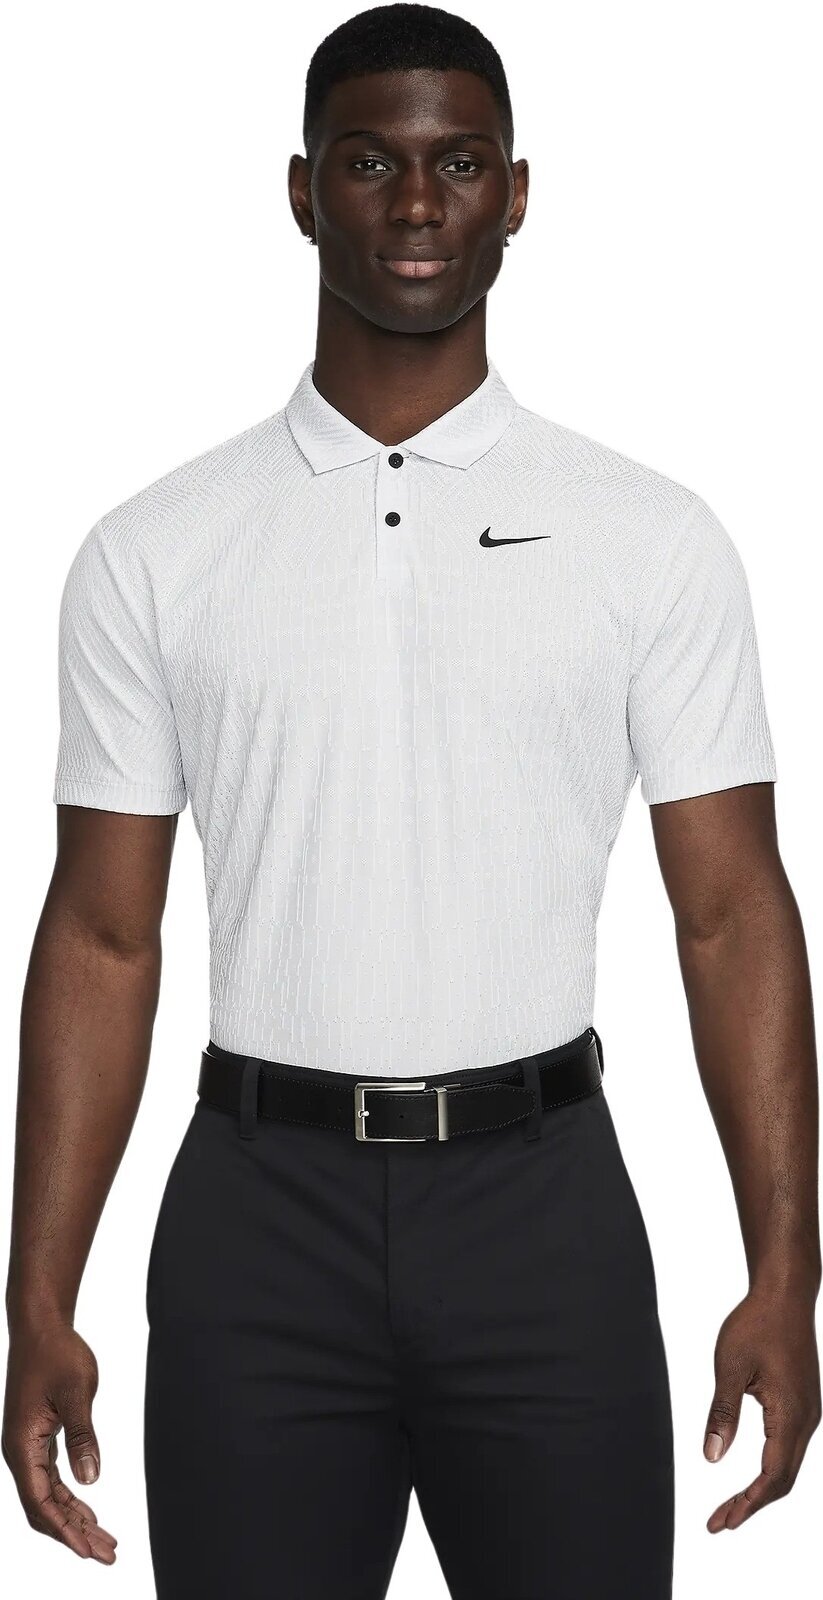 Polo majica Nike Dri-Fit ADV Tour Mens Polo White/Pure Platinum/Black L